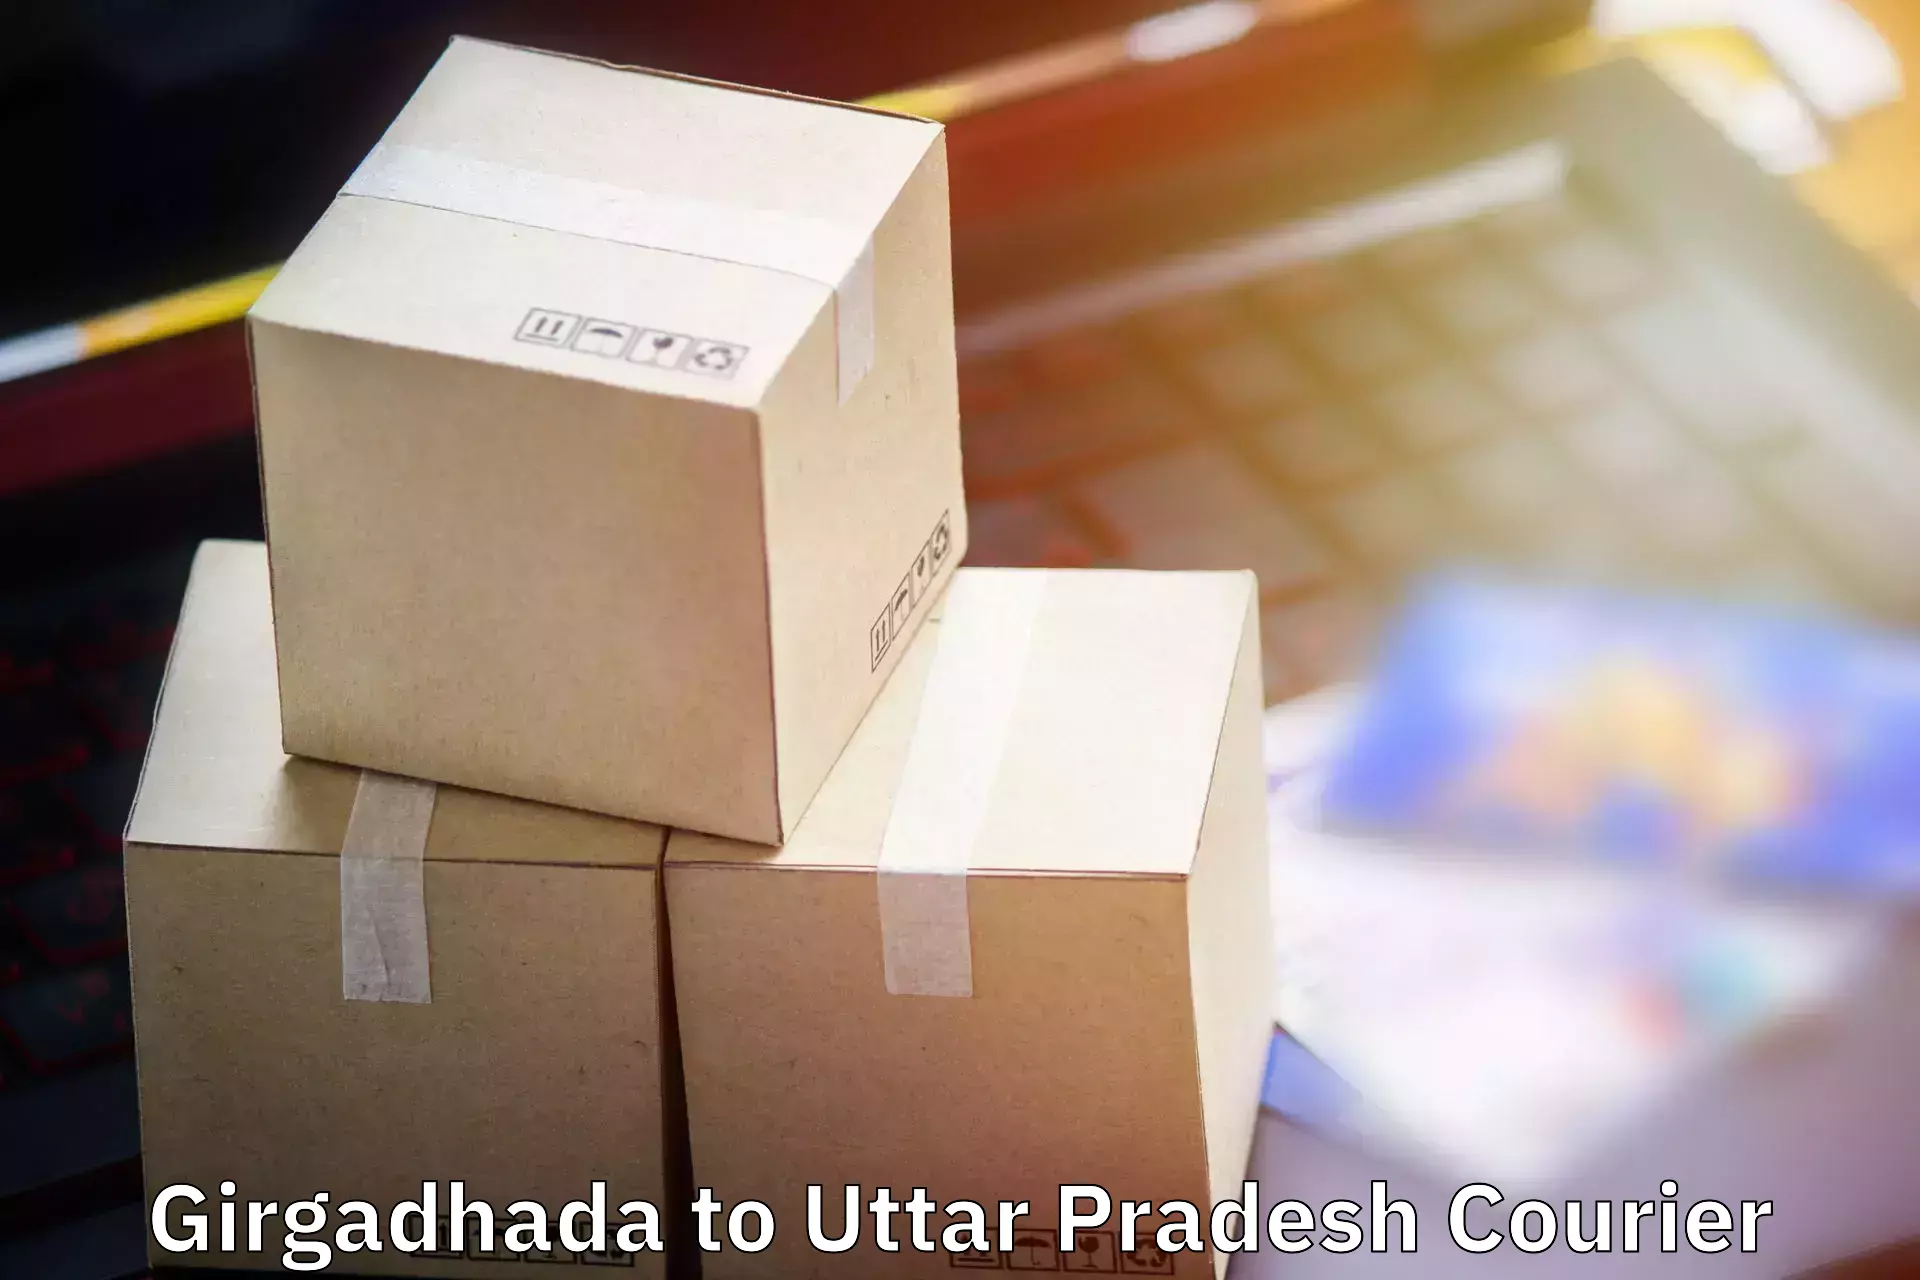 Electronic items luggage shipping Girgadhada to Chhata